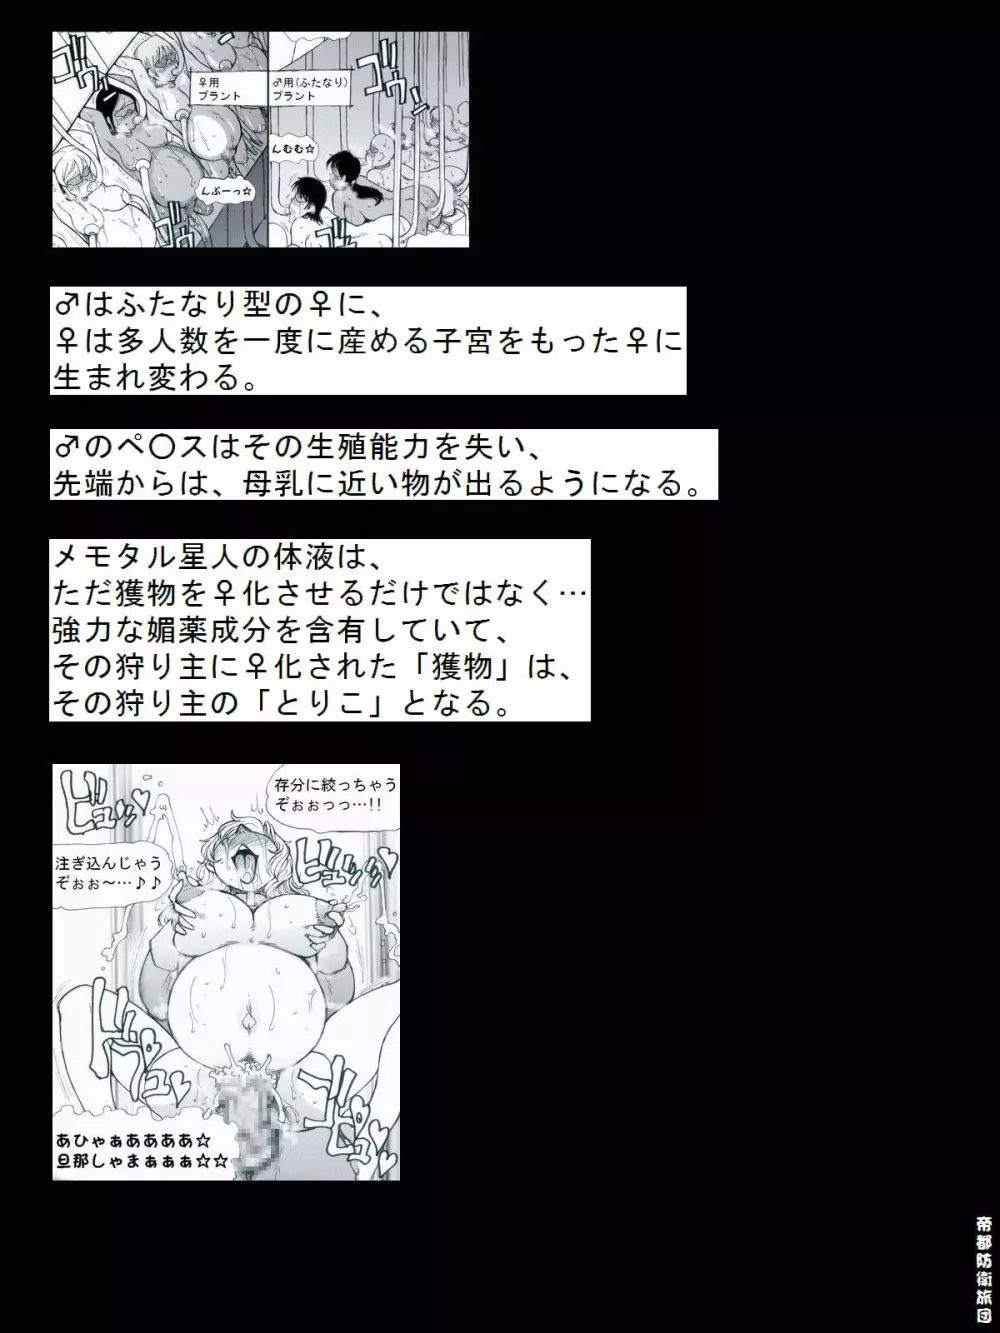 [帝都防衛旅団] RTKBOOK 9-3 「M○Xいぢり(3) 『PANPAN-MAN』」 28ページ